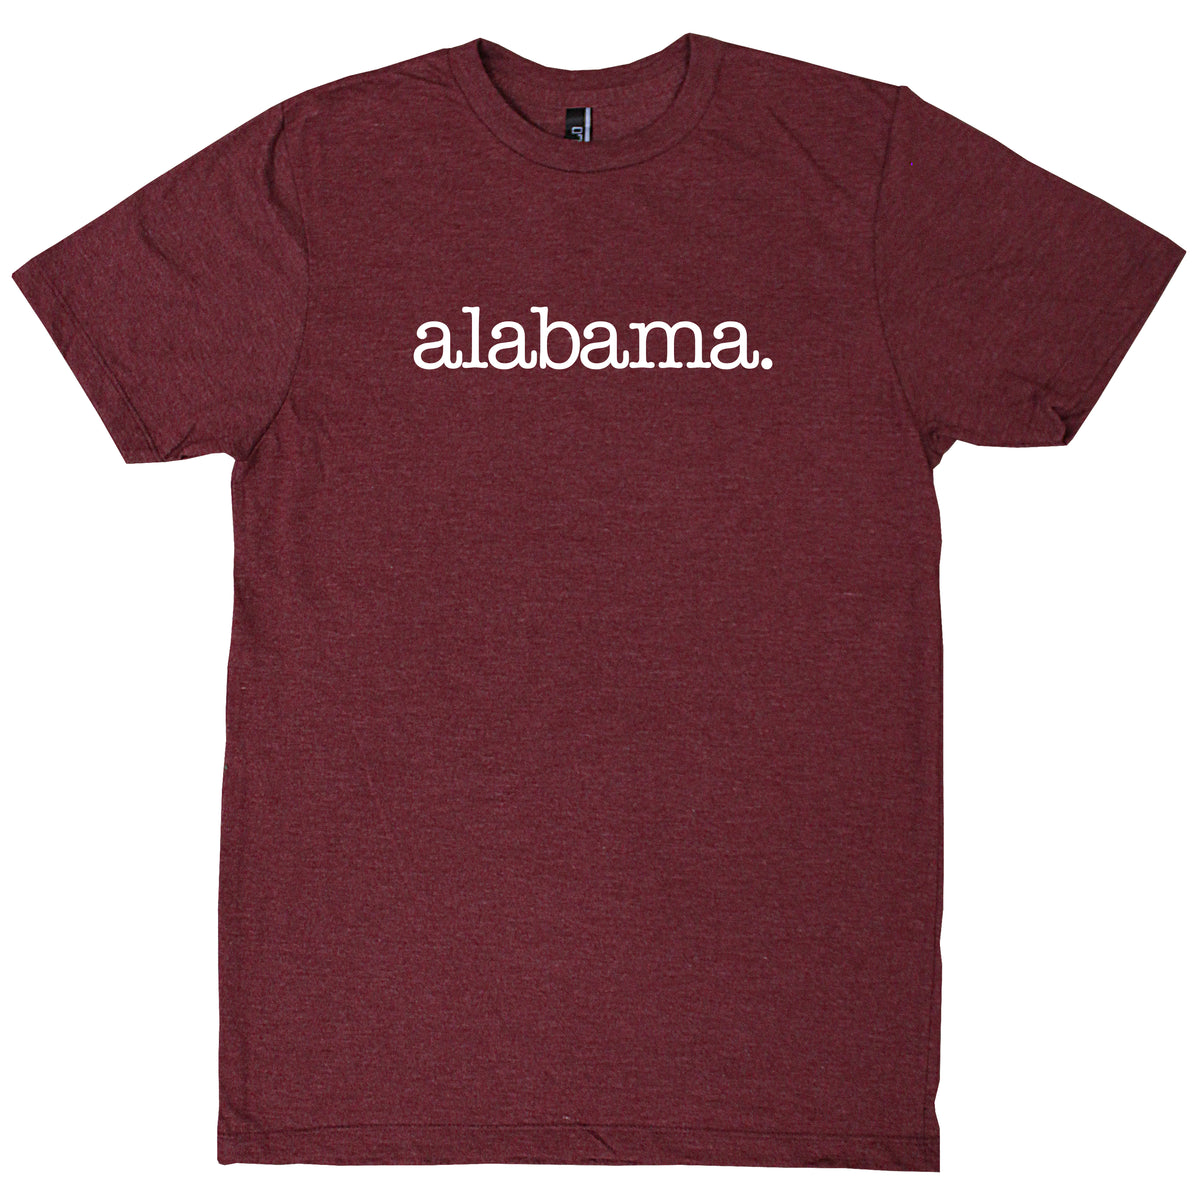 Alabama. T-Shirt